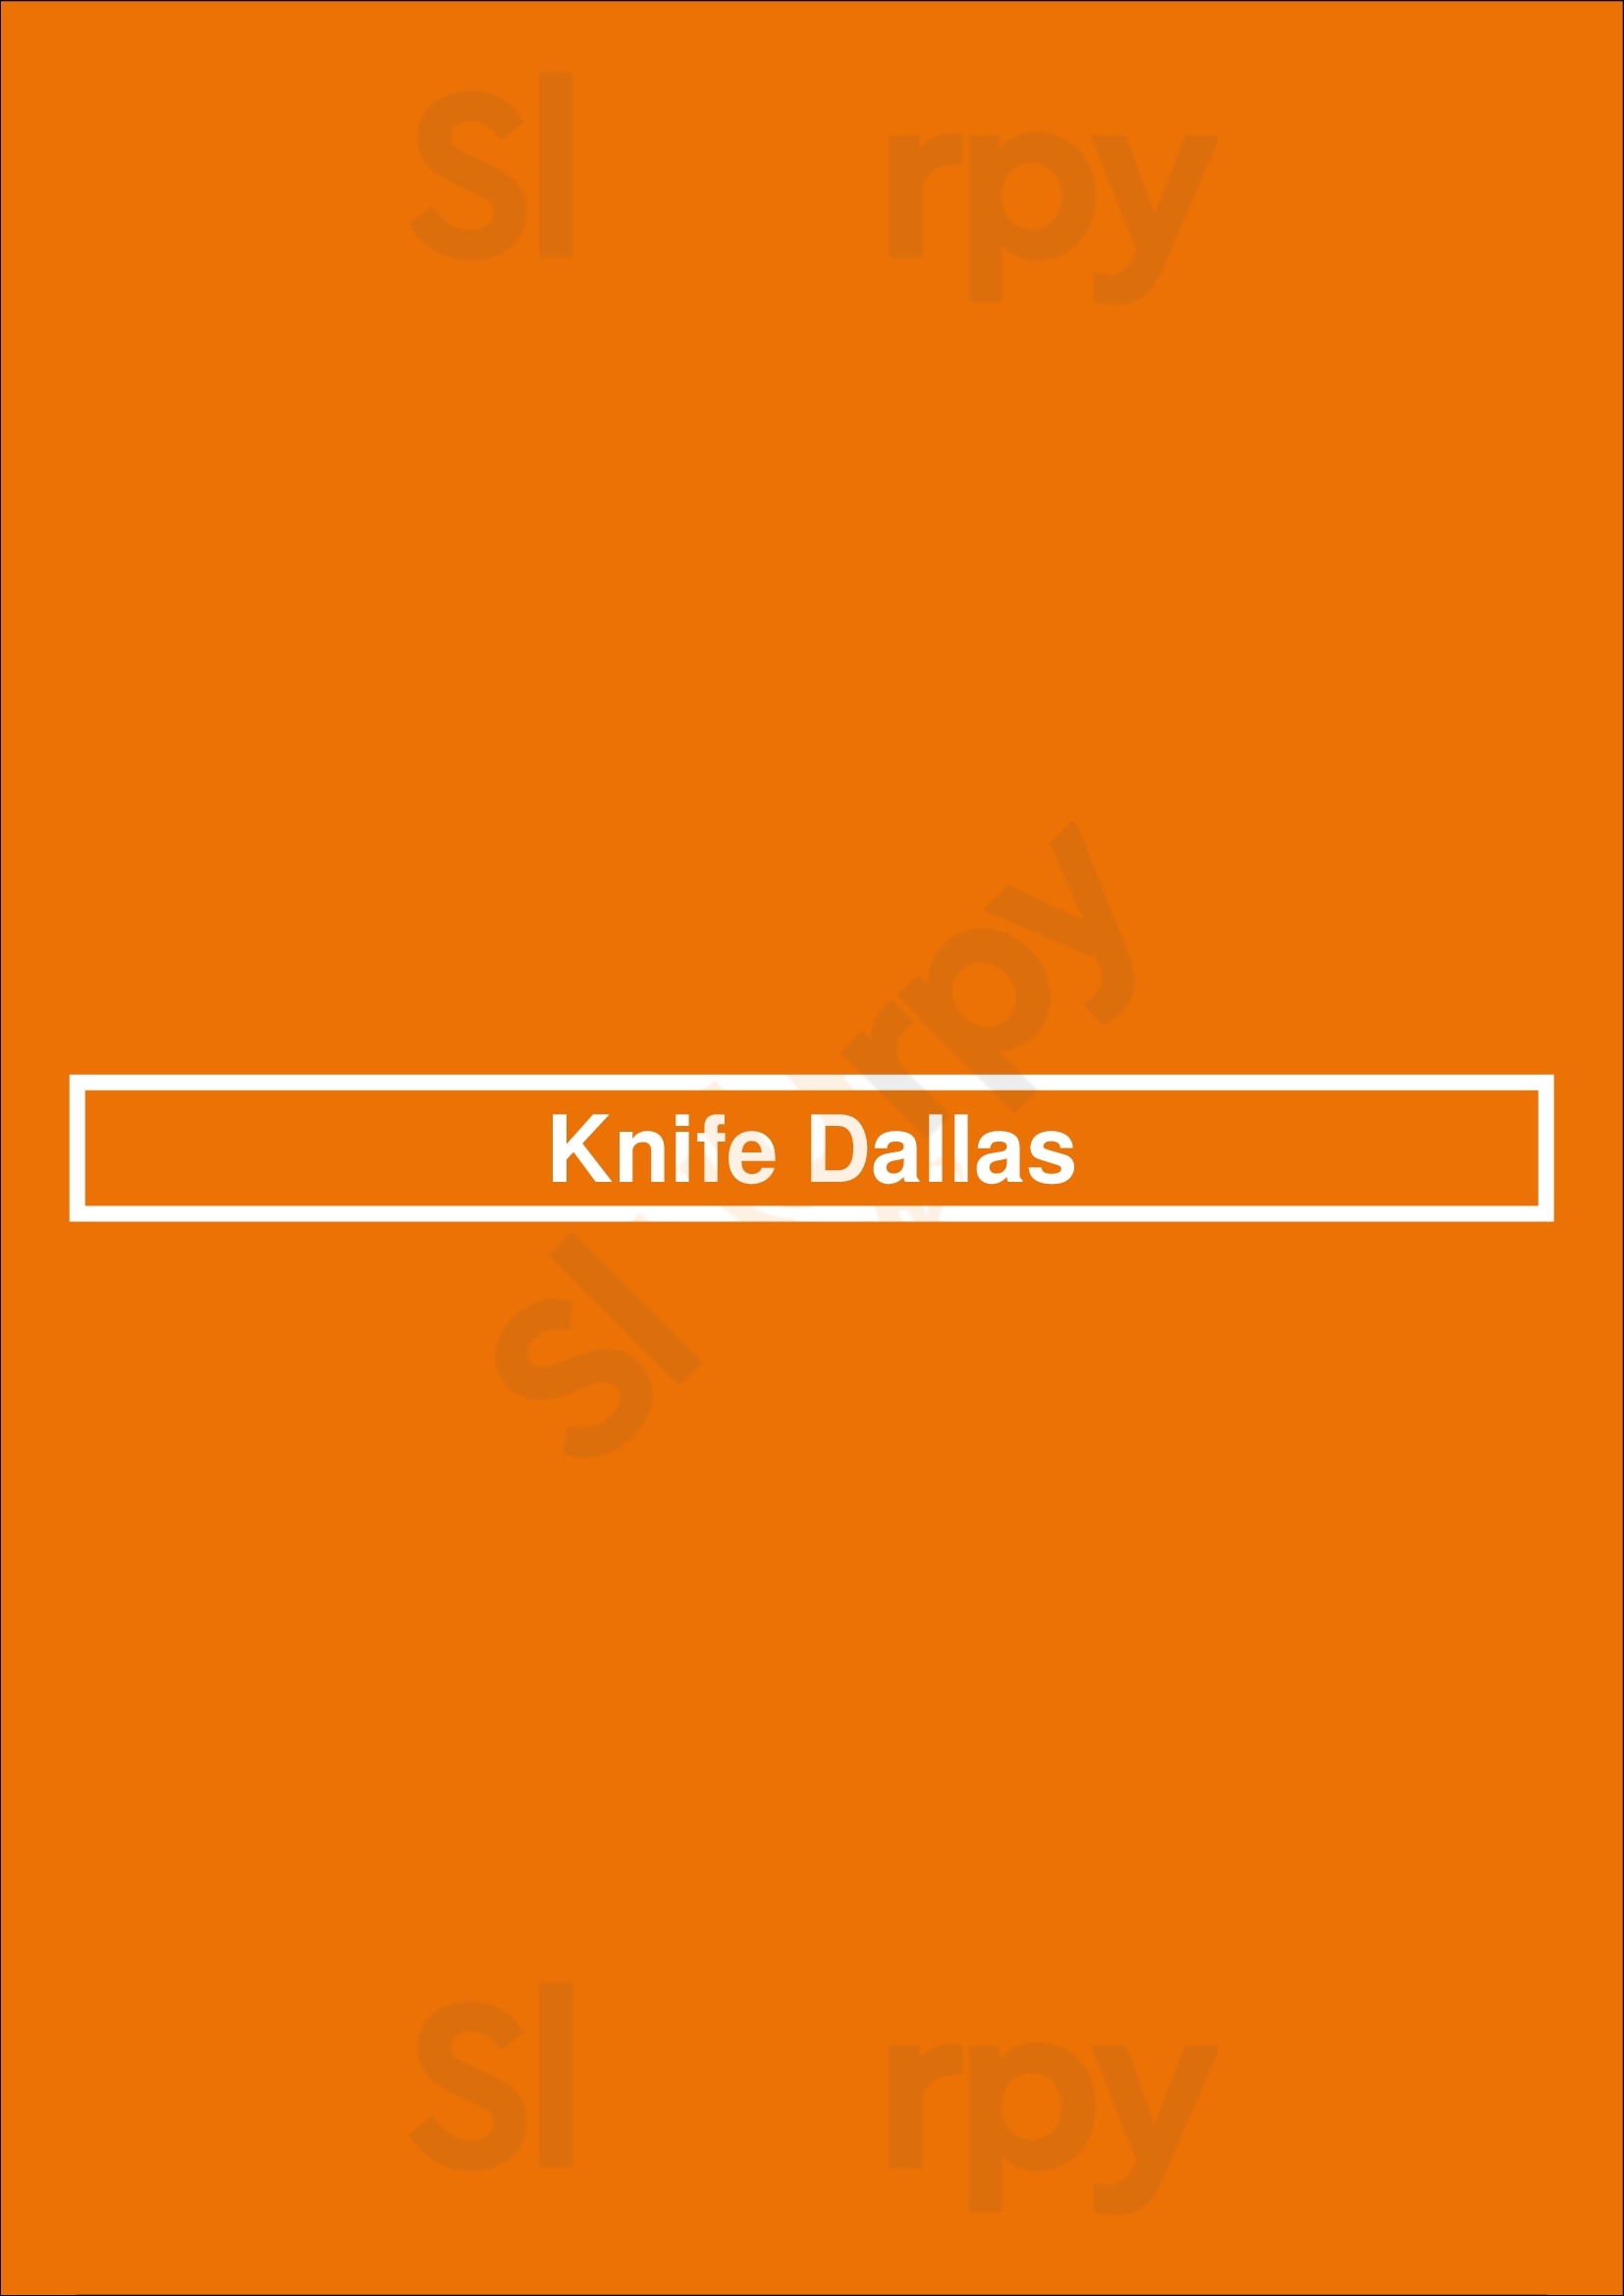 Knife Dallas Dallas Menu - 1